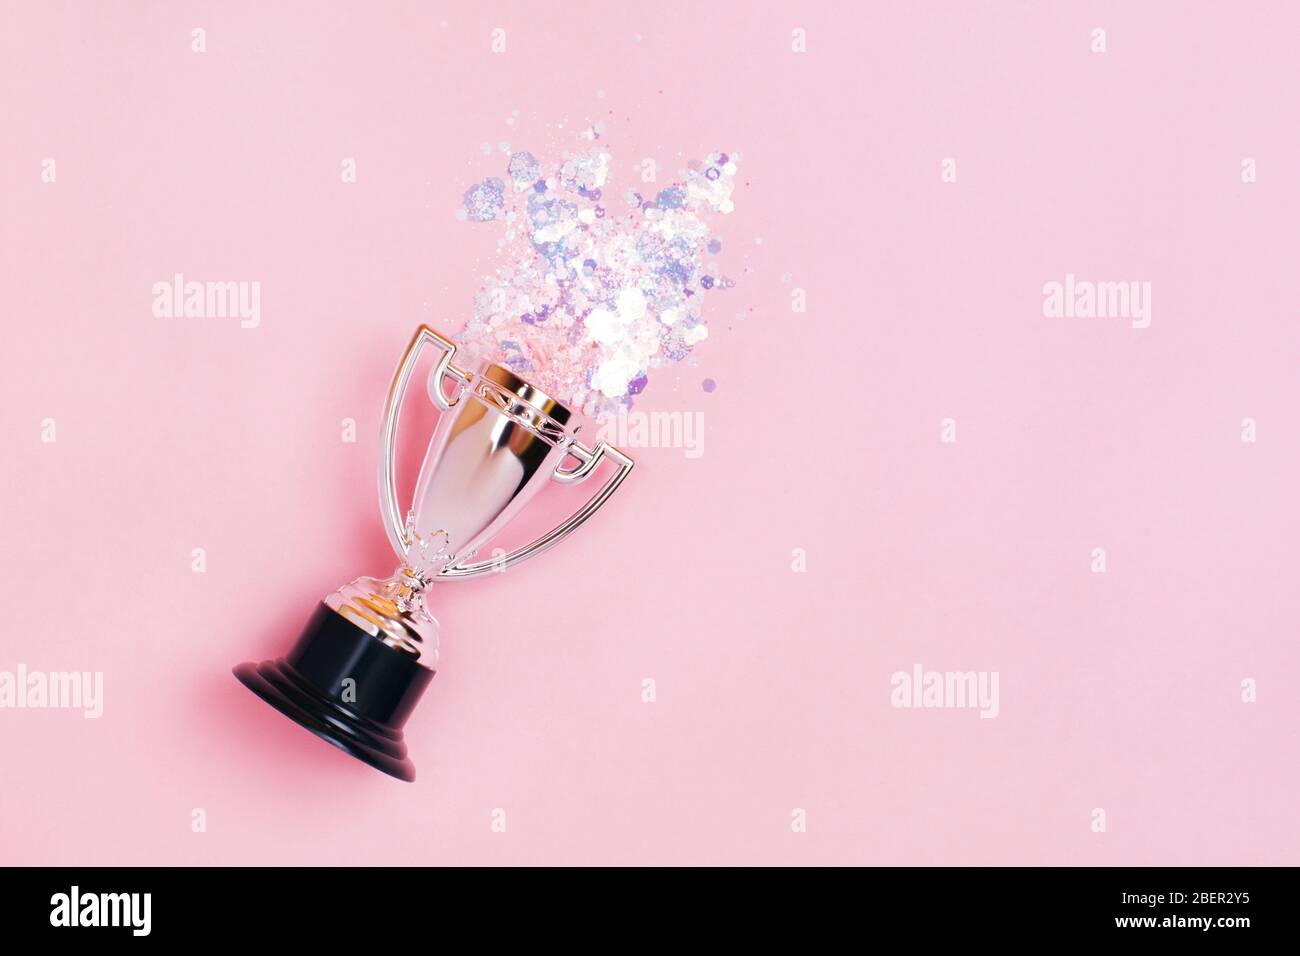 Une tasse gagnante en argent aux couleurs vives sur fond pastel. Style lat Lay. Banque D'Images